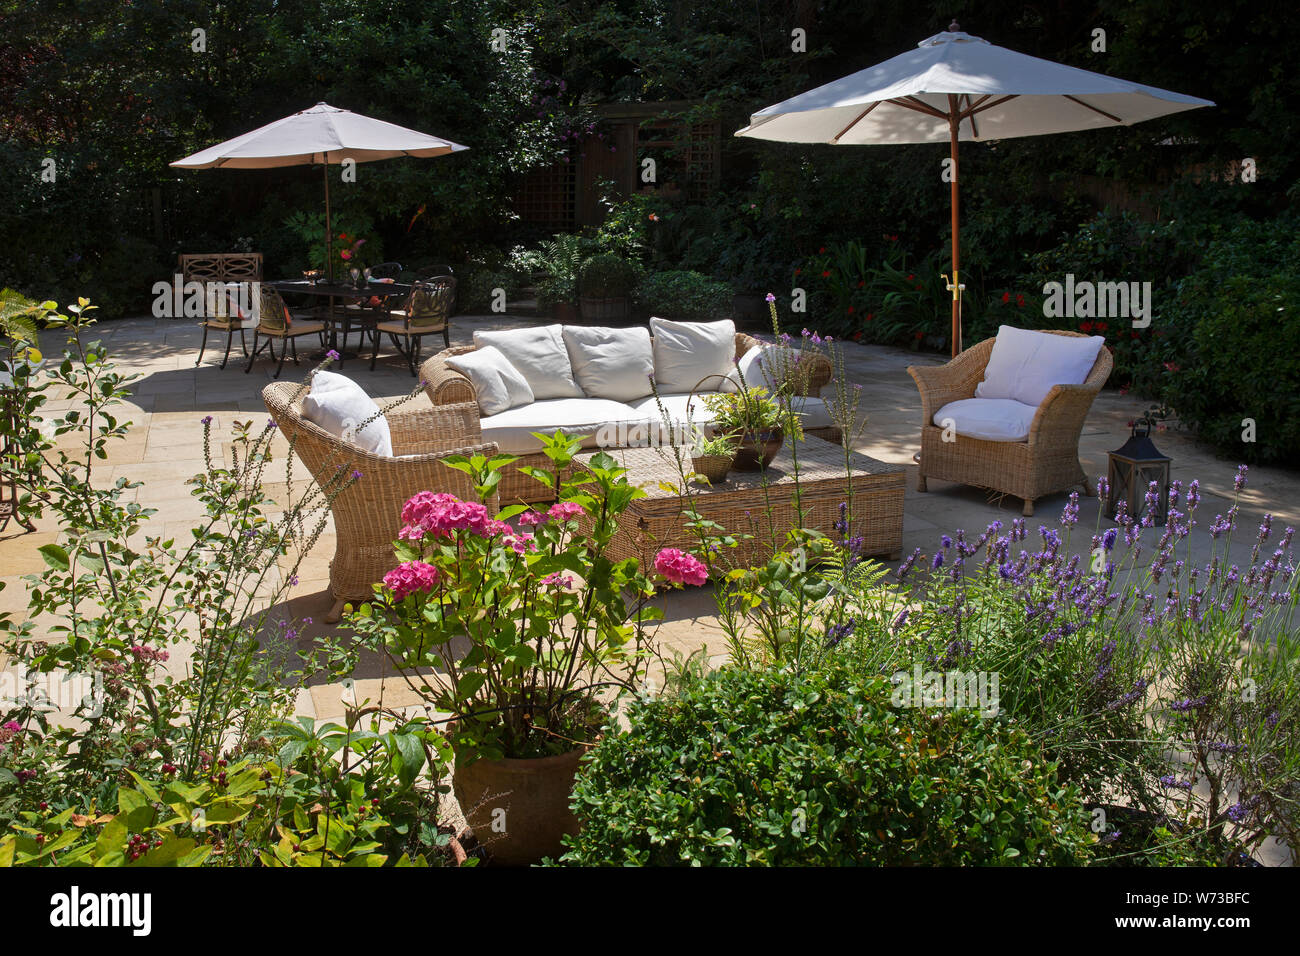 wicker outdoor seating with sun umbrella in English garden, England Stock Photo